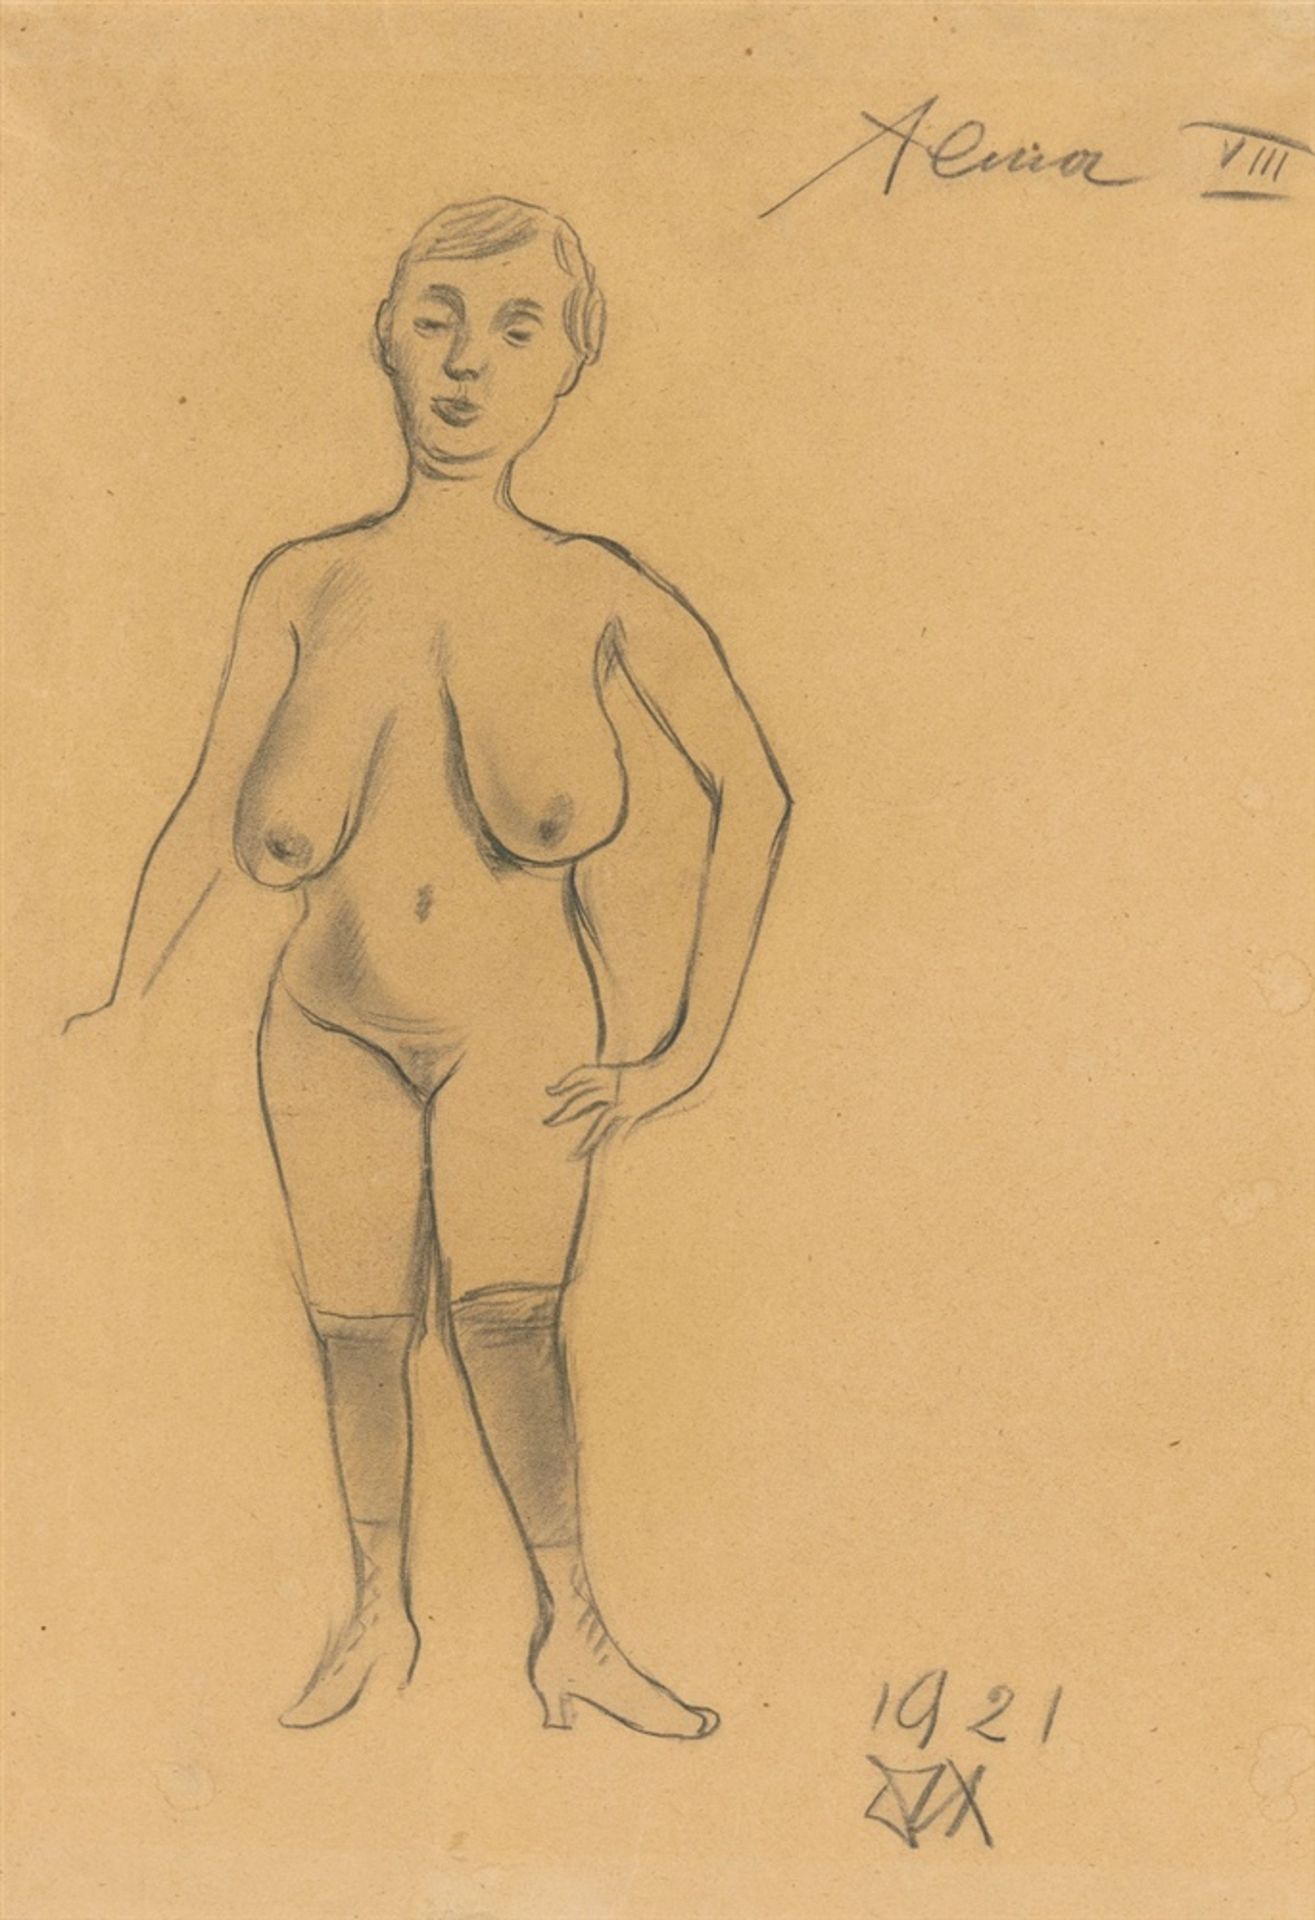 Otto DixAlma VIIIBleistift, teils gewischt, auf bräunlichem Velin 46,4 x 33,4 cm Unter Glas gerahmt.